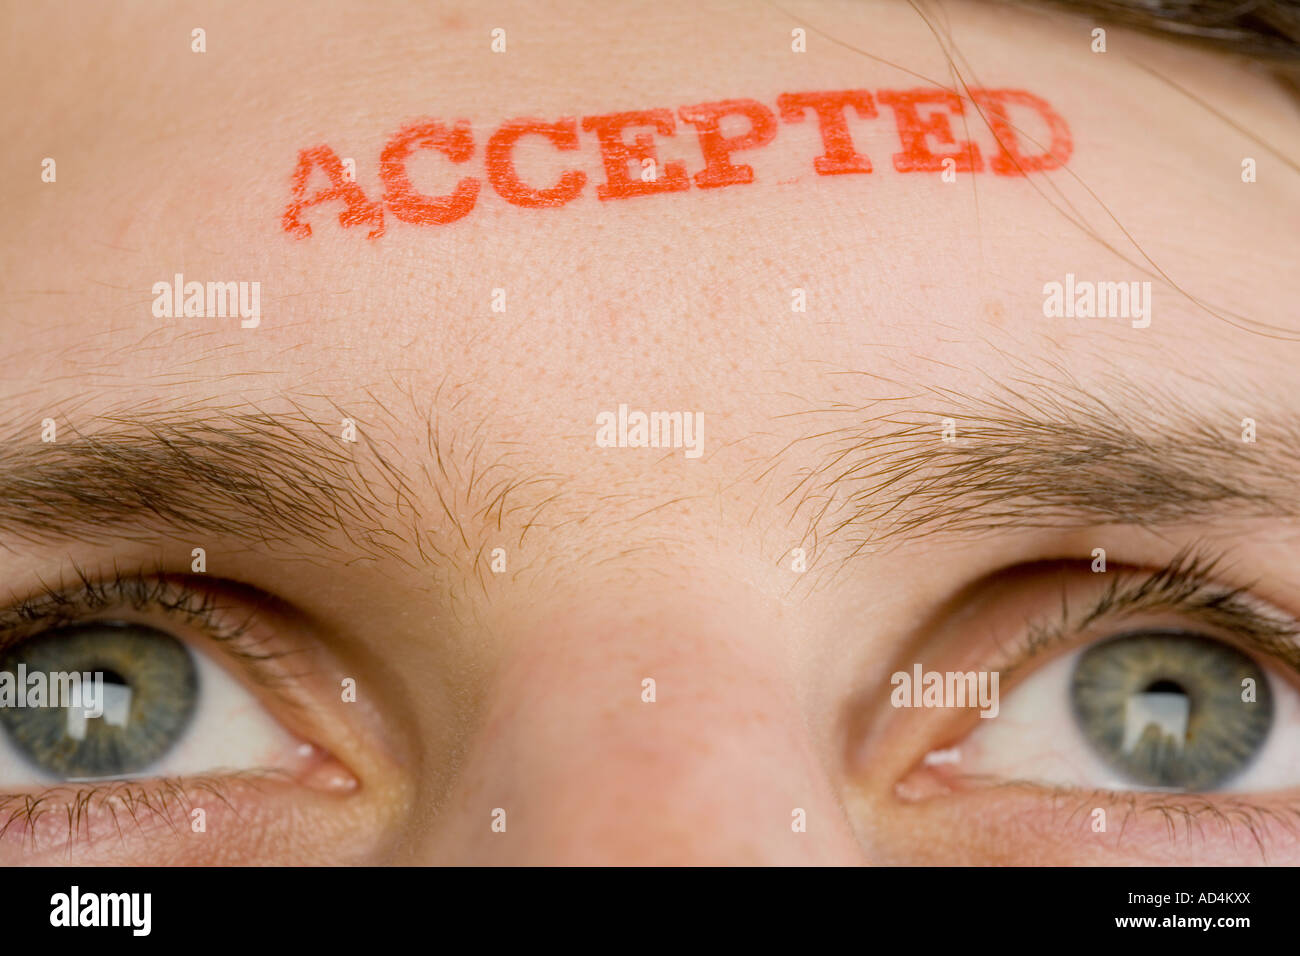 Un uomo con "accettato" stampigliato sulla sua fronte Foto Stock